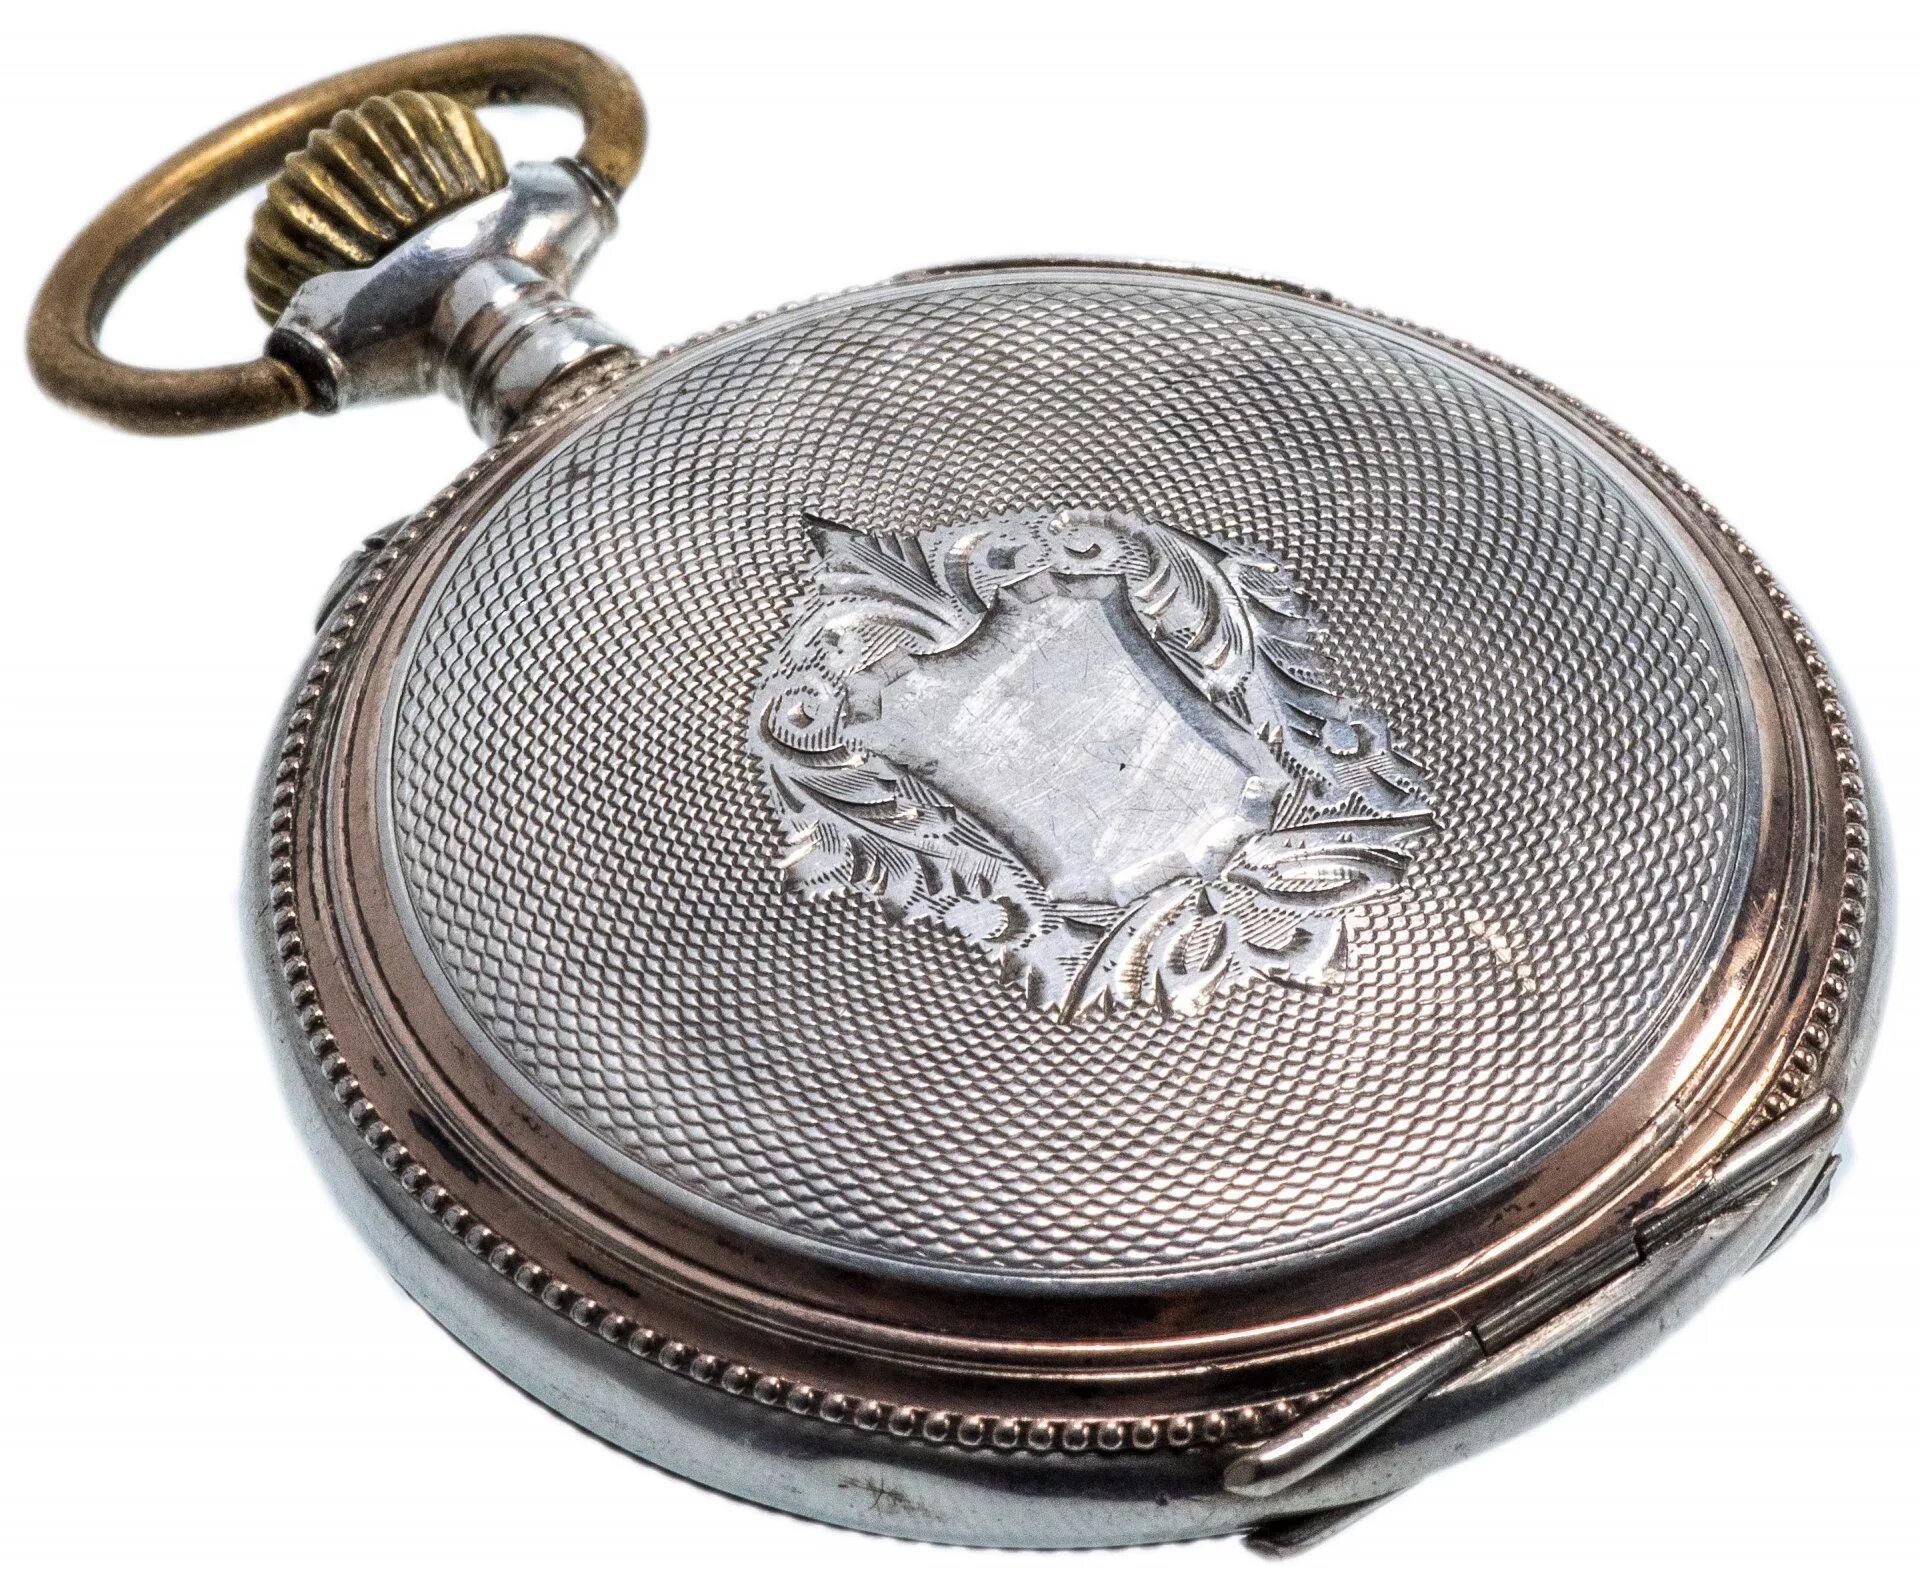 Карманные часы Galonne Швейцария. Часы карманные швейцарские Galonne серебро 0.800 проба. Часы Galonne карманные серебряные. Часы карманные Bellaria серебряные.